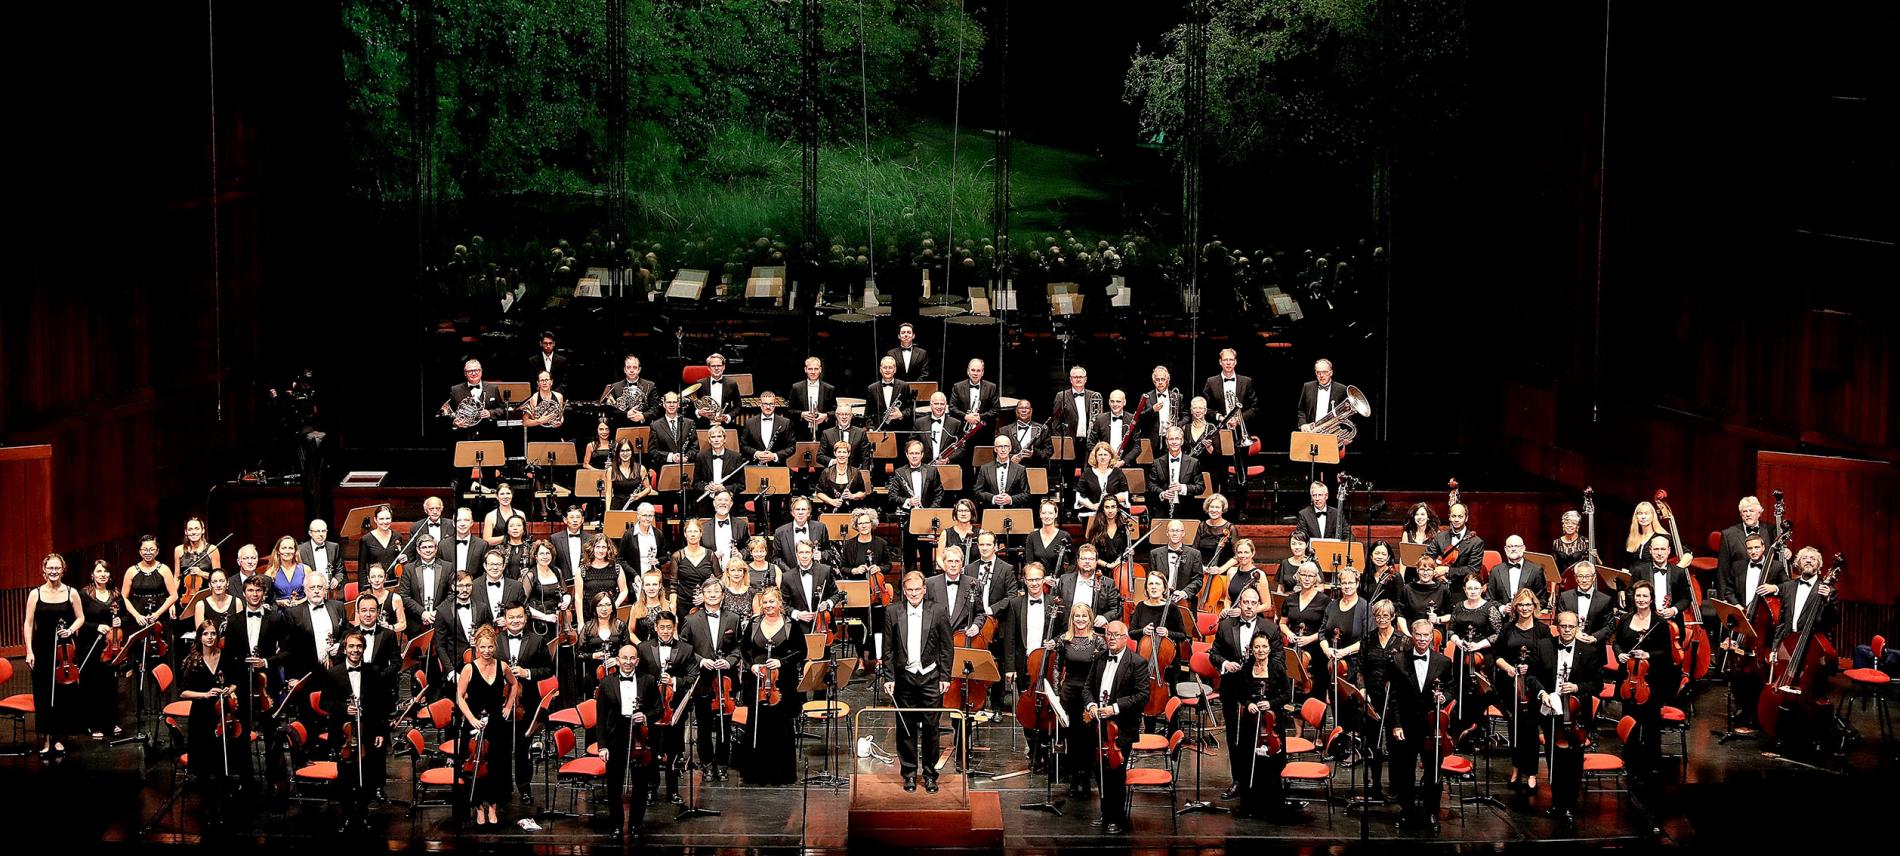 Das World Doctors Orchestra bei einem Benefizkonzert. Foto: Arlindo Homem